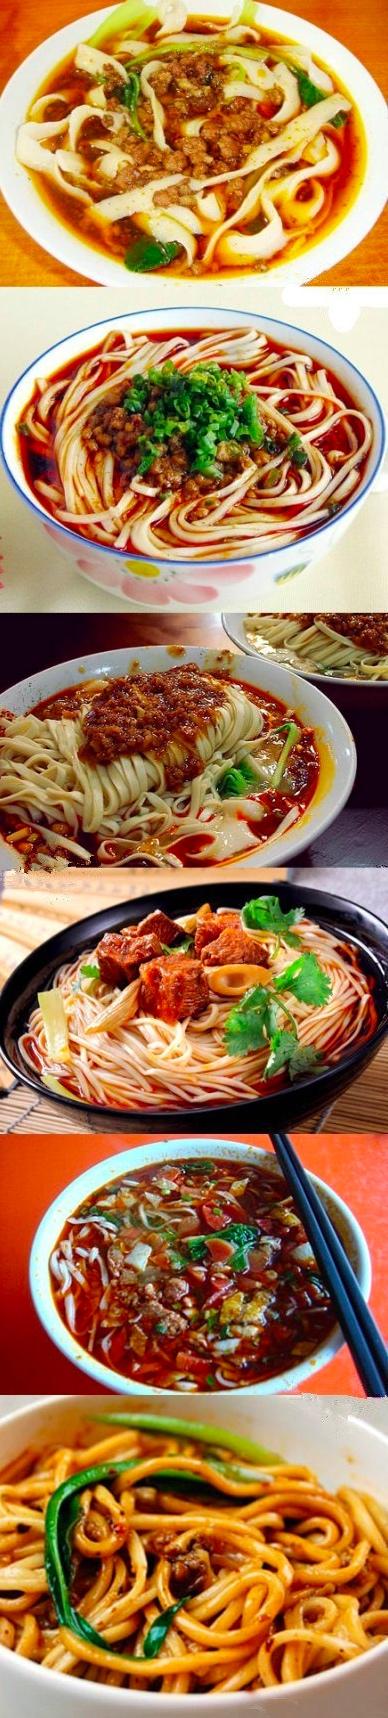 陕西臊子面号称是中国最好吃六大面食之一 为什么好吃